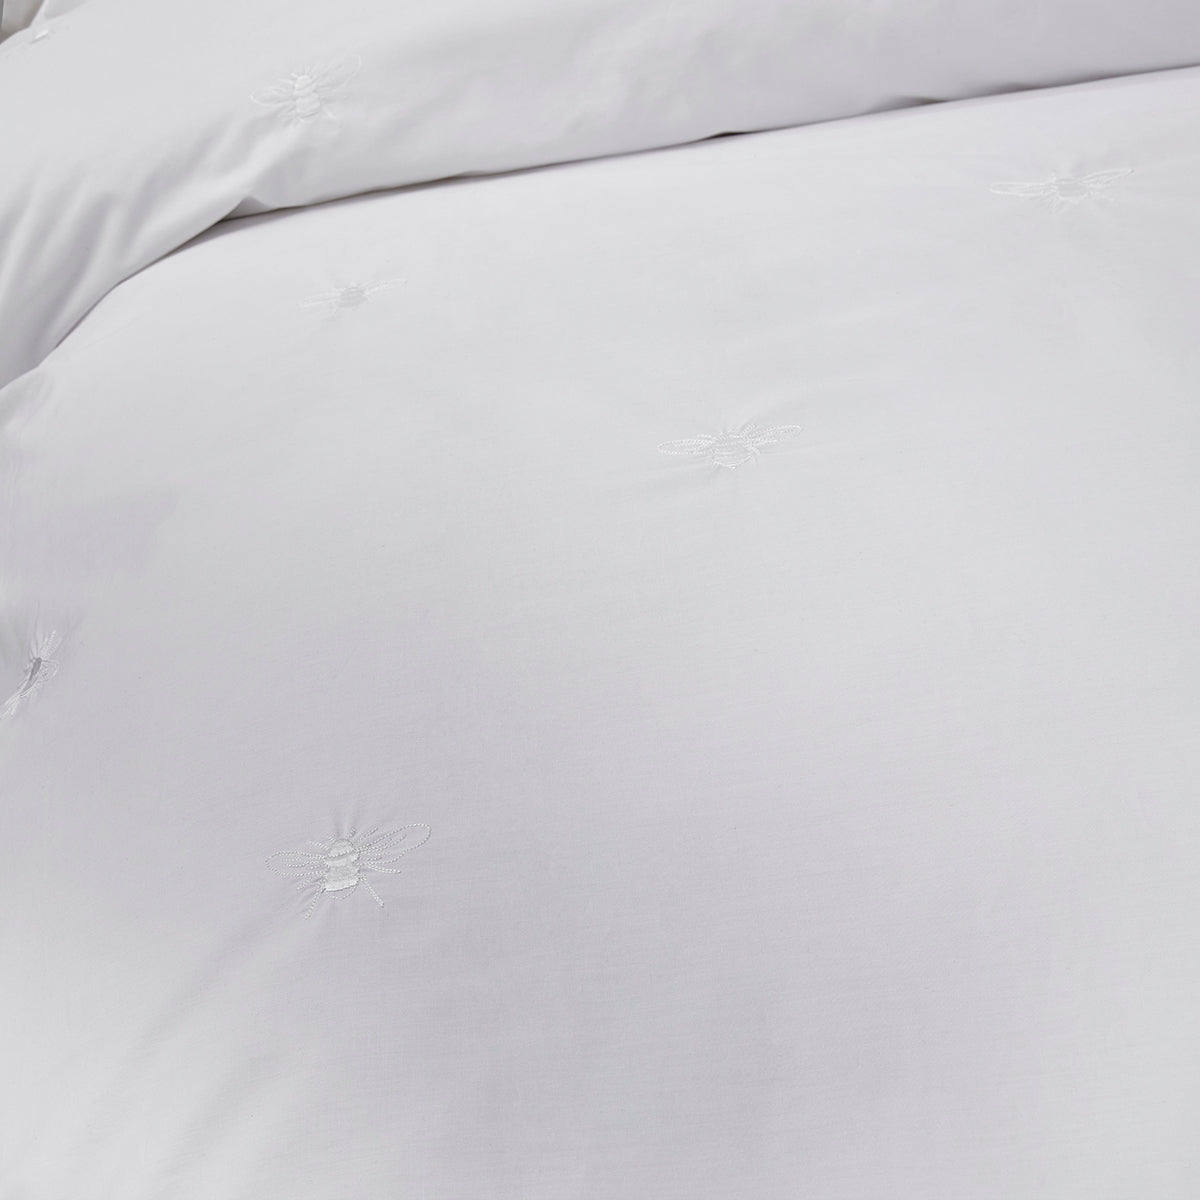 White bee detailing on Sophie Allport white bedding